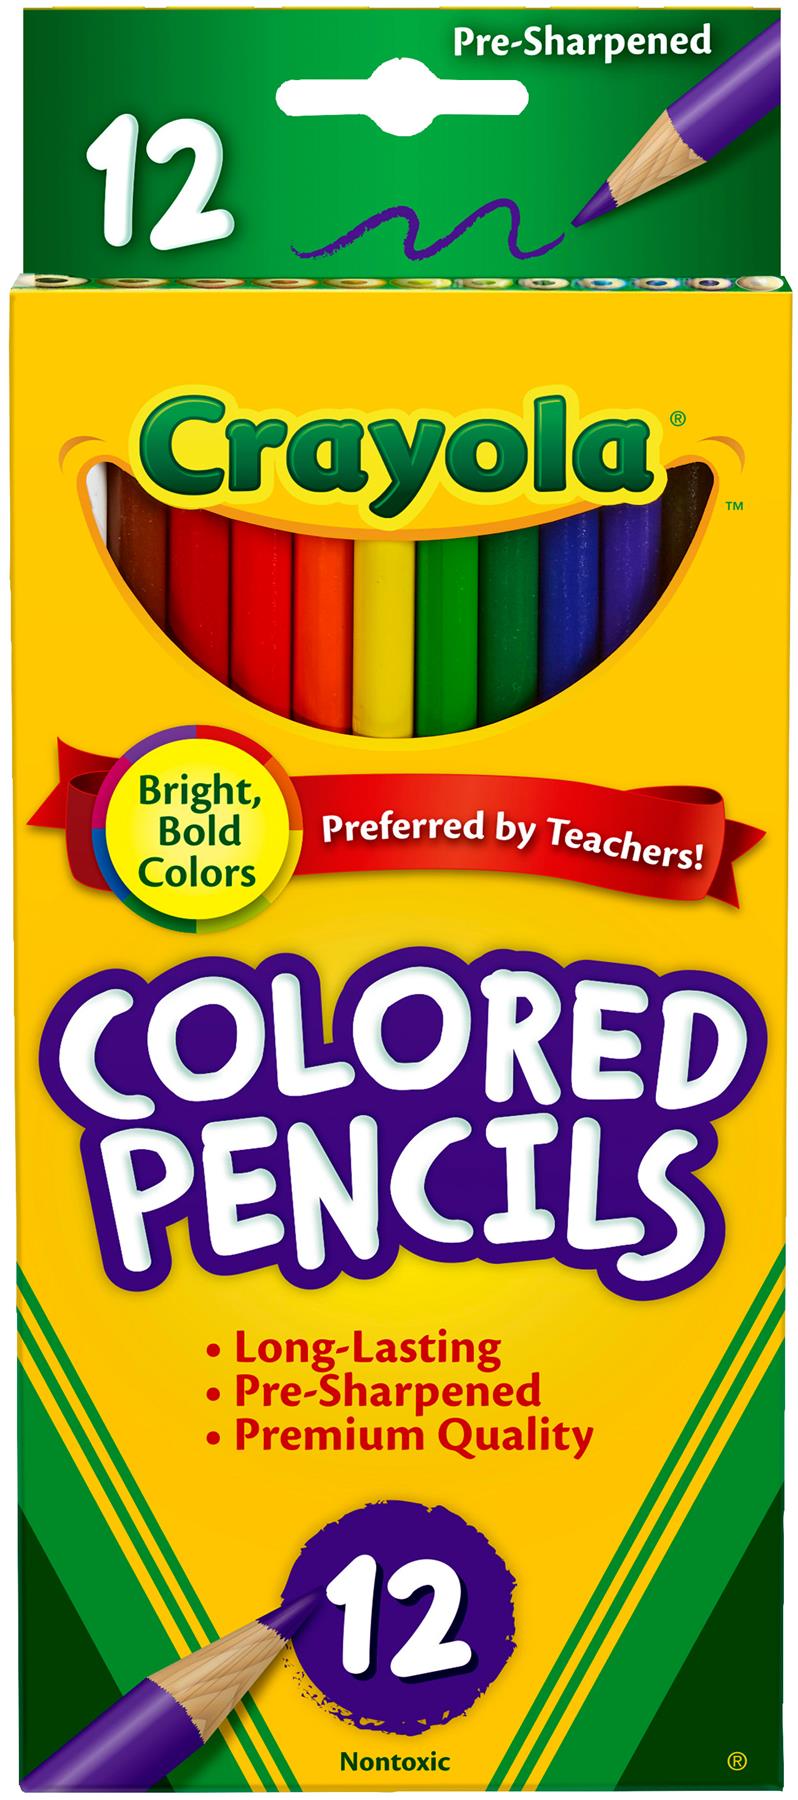 Crayola Coloured Crayons de couleur 68-4012 Lot de 12 couleurs assorties pleine longueur